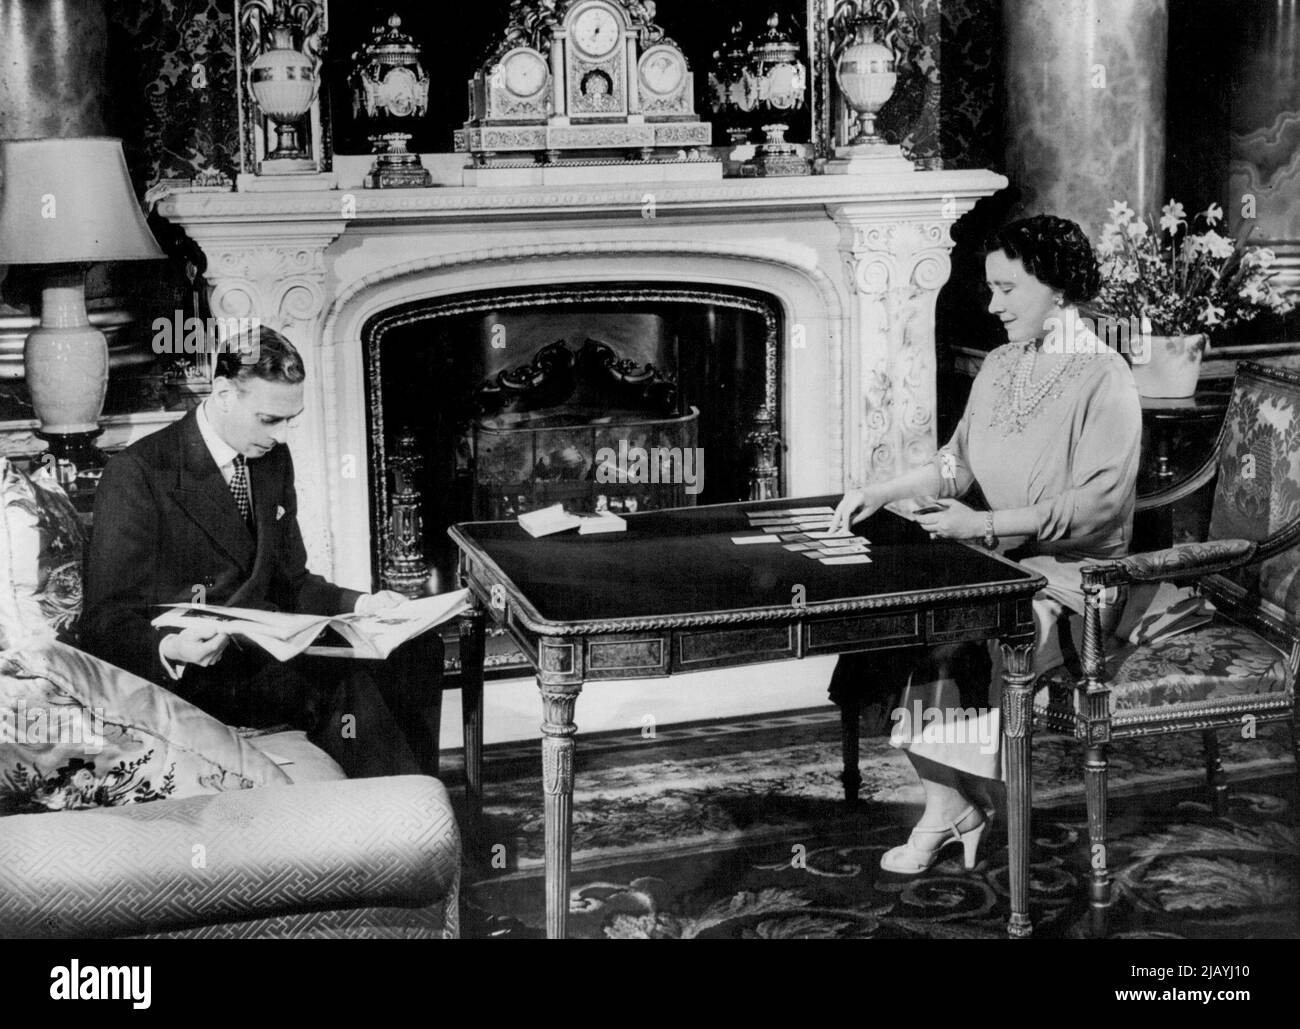 Die königliche Silberhochzeit - H.M. die Königin spielt Geduld - ein Kartenspiel, das sie besonders liebt - während der König eine Zeitschrift liest. Am Montag, dem 26.. April, feiern ihre Majestäten König George VI. Und Königin Elizabeth ihren 25.. Hochzeitstag - ihre Silberhochzeit. Diese intimen, nun entstandenen Fotografien zeigen das königliche Paar zu Hause in ihren privaten Wohnungen im Buckingham Palace, London, und wurden speziell für diesen Anlass aufgenommen. 20. April 1948. (Foto von Fox Photos). Stockfoto